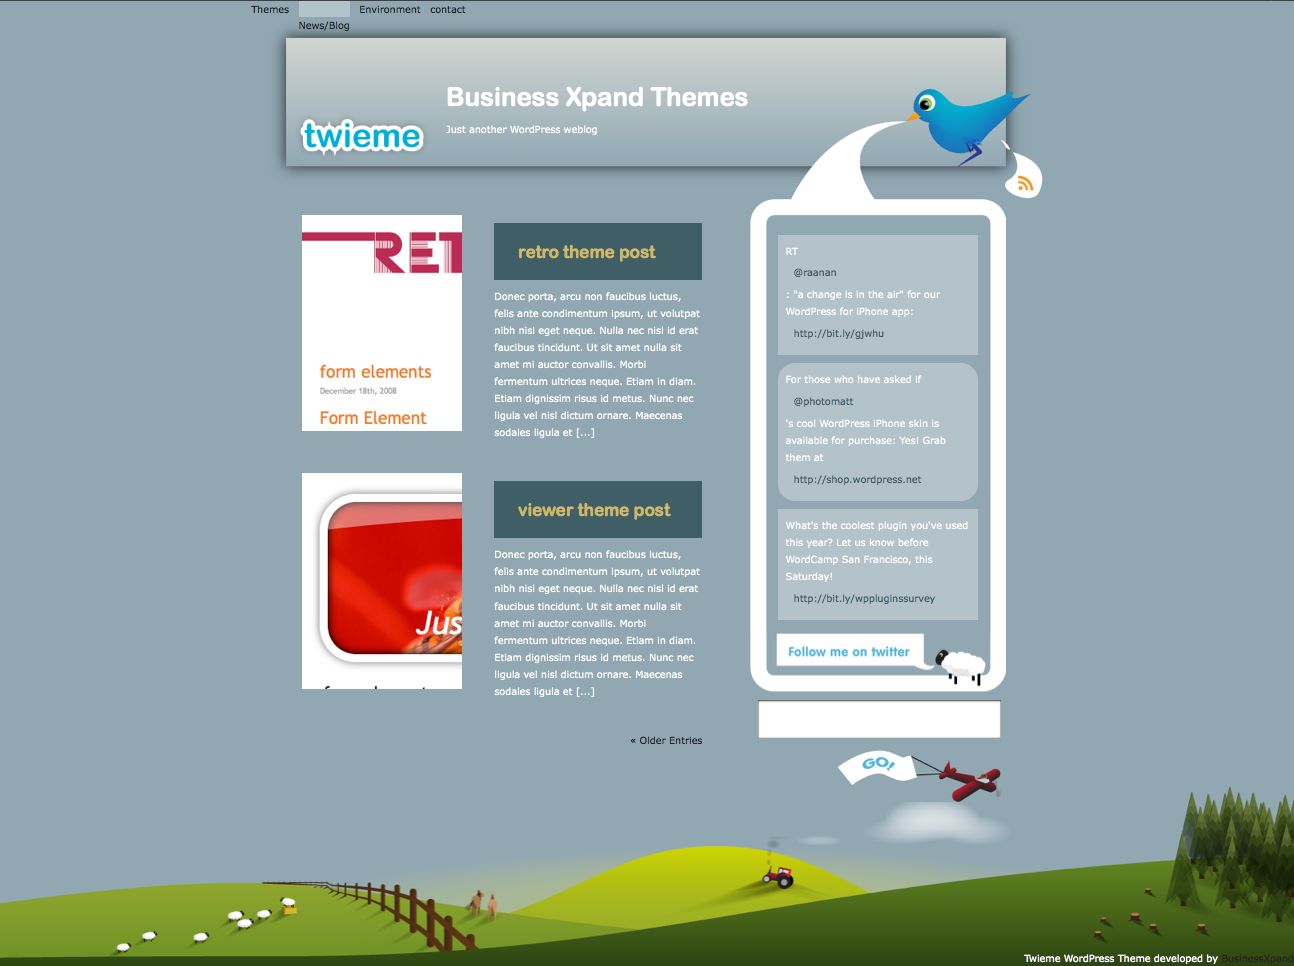 businessxpand_twieme free wordpress theme